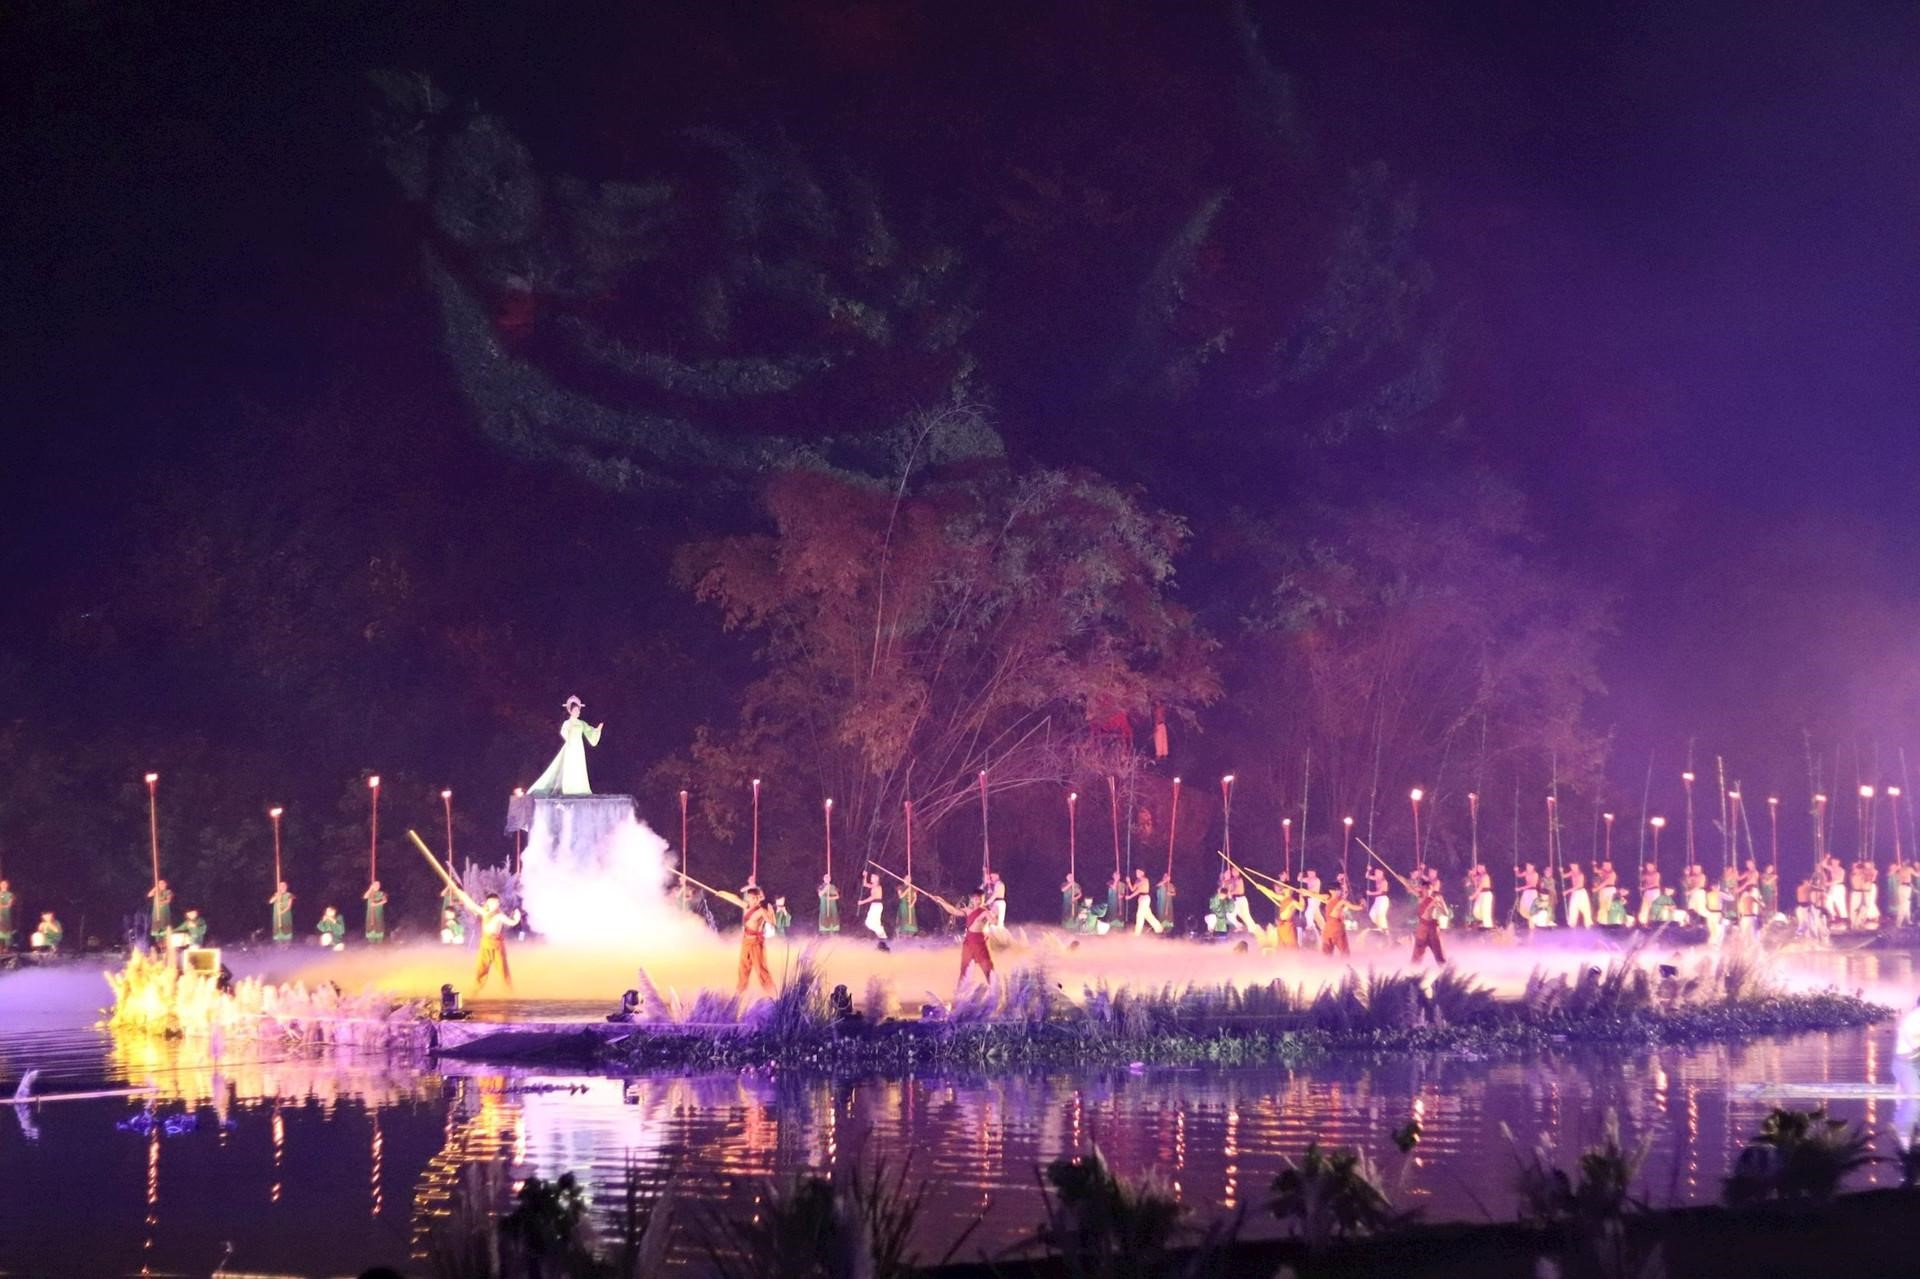 Khai mạc Festival Ninh Bình - Tràng An năm 2023 với chủ đề “Sắc màu di sản - Hội tụ và lan tỏa”.